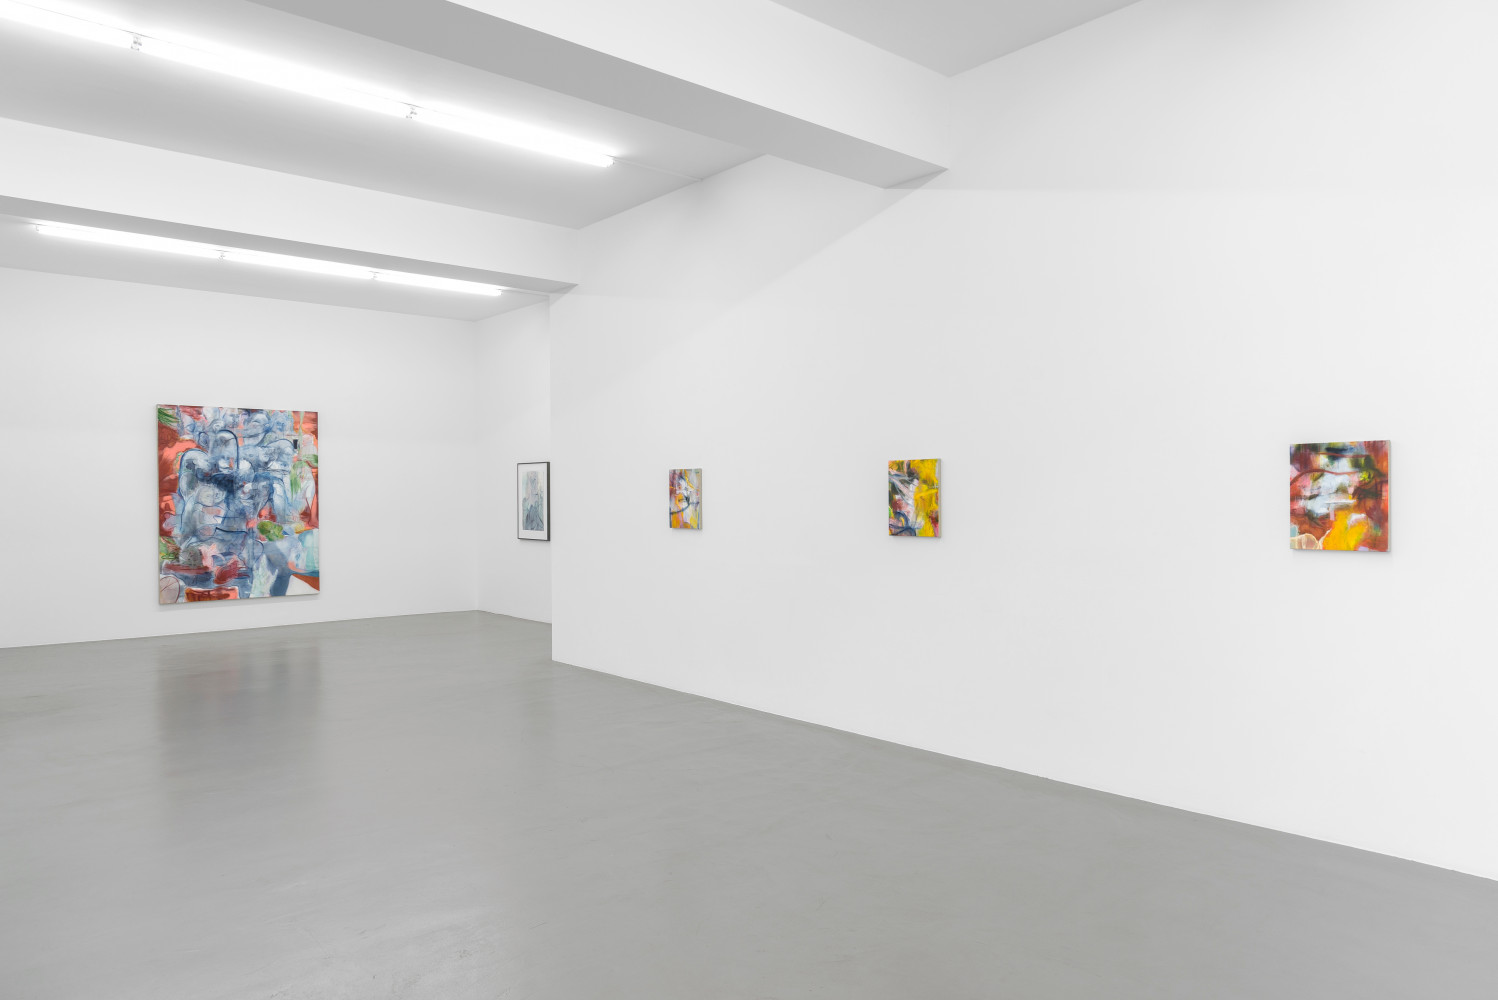 Nigel Cooke, ‘Nigel Cooke – Spring in Fialta’, Installation view, Buchmann Galerie, 2019